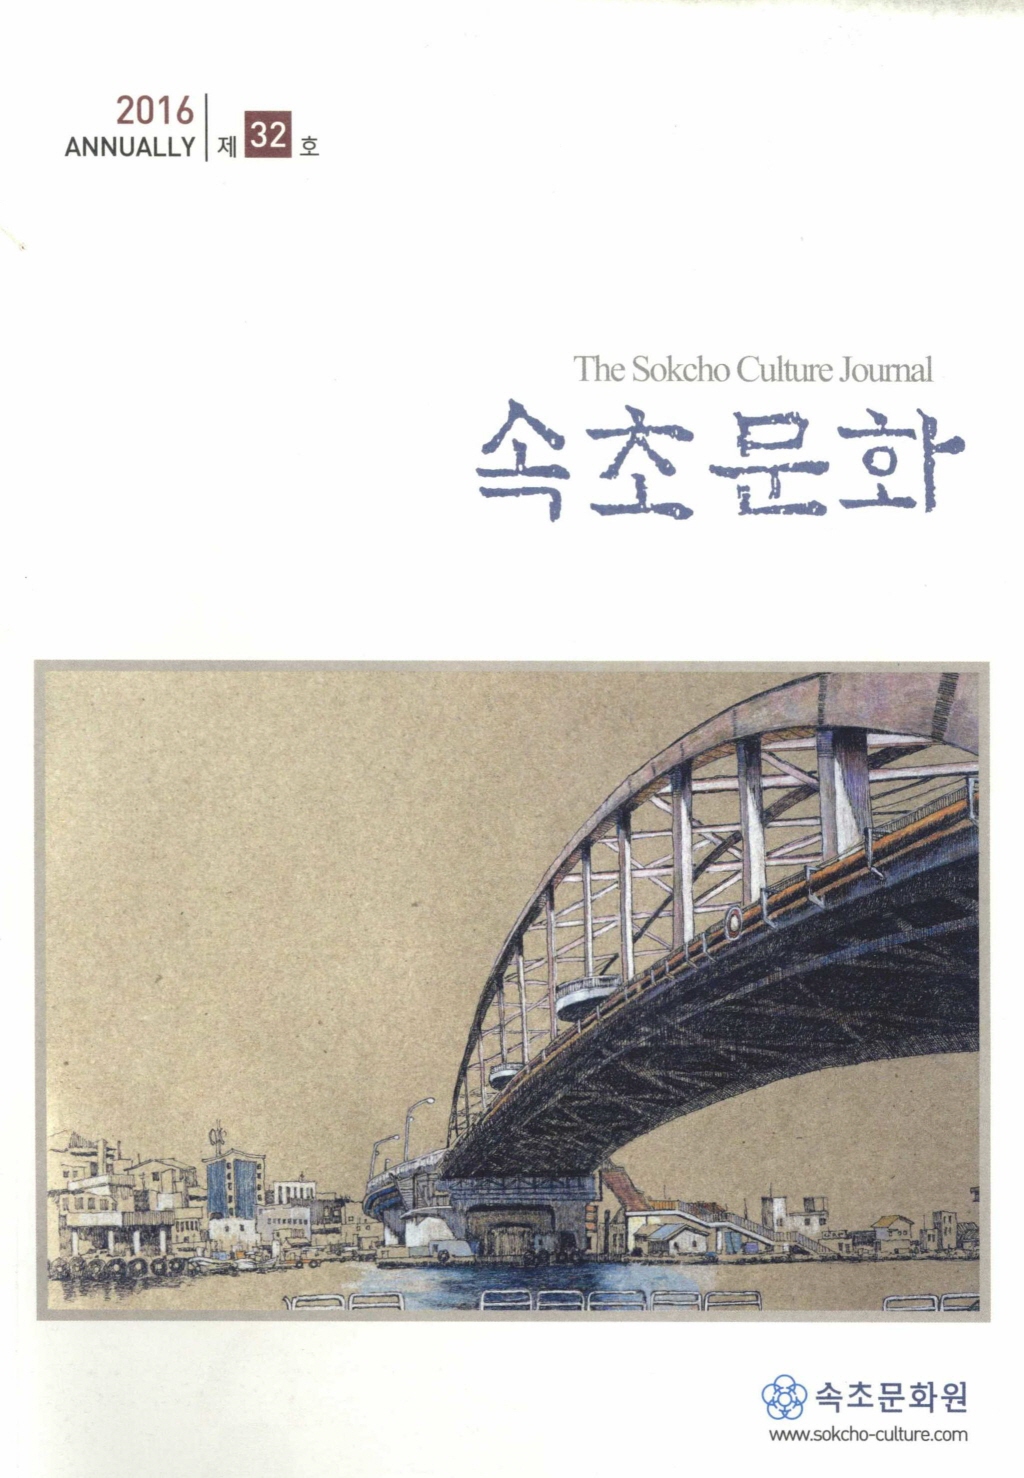 속초(束草)문화(文化) 16년 제32호